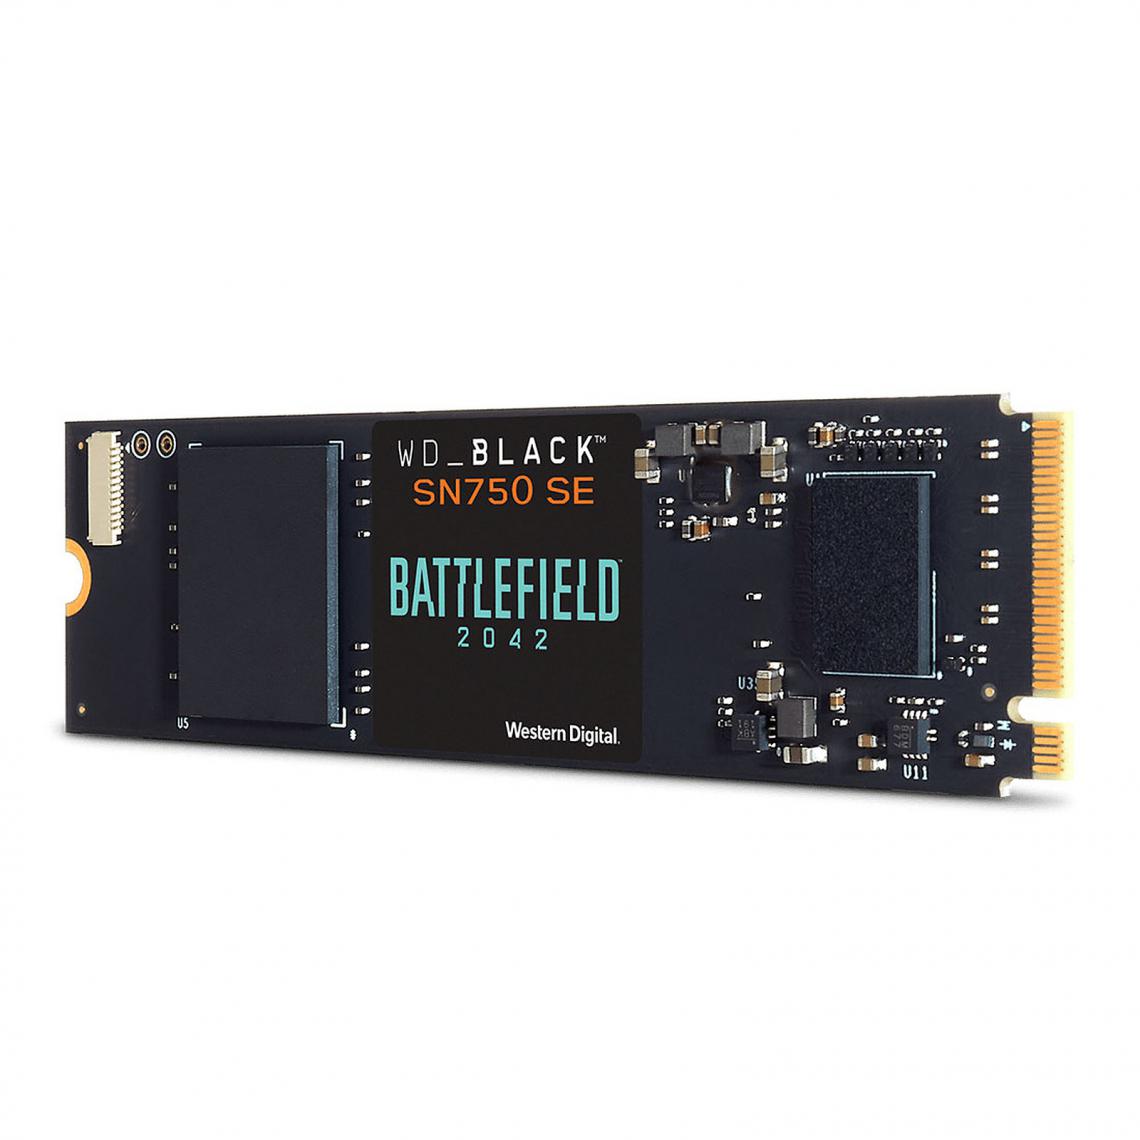 Western Digital - SSD WD Black SN750 SE 1 To Battlefield 2042 - SSD Interne